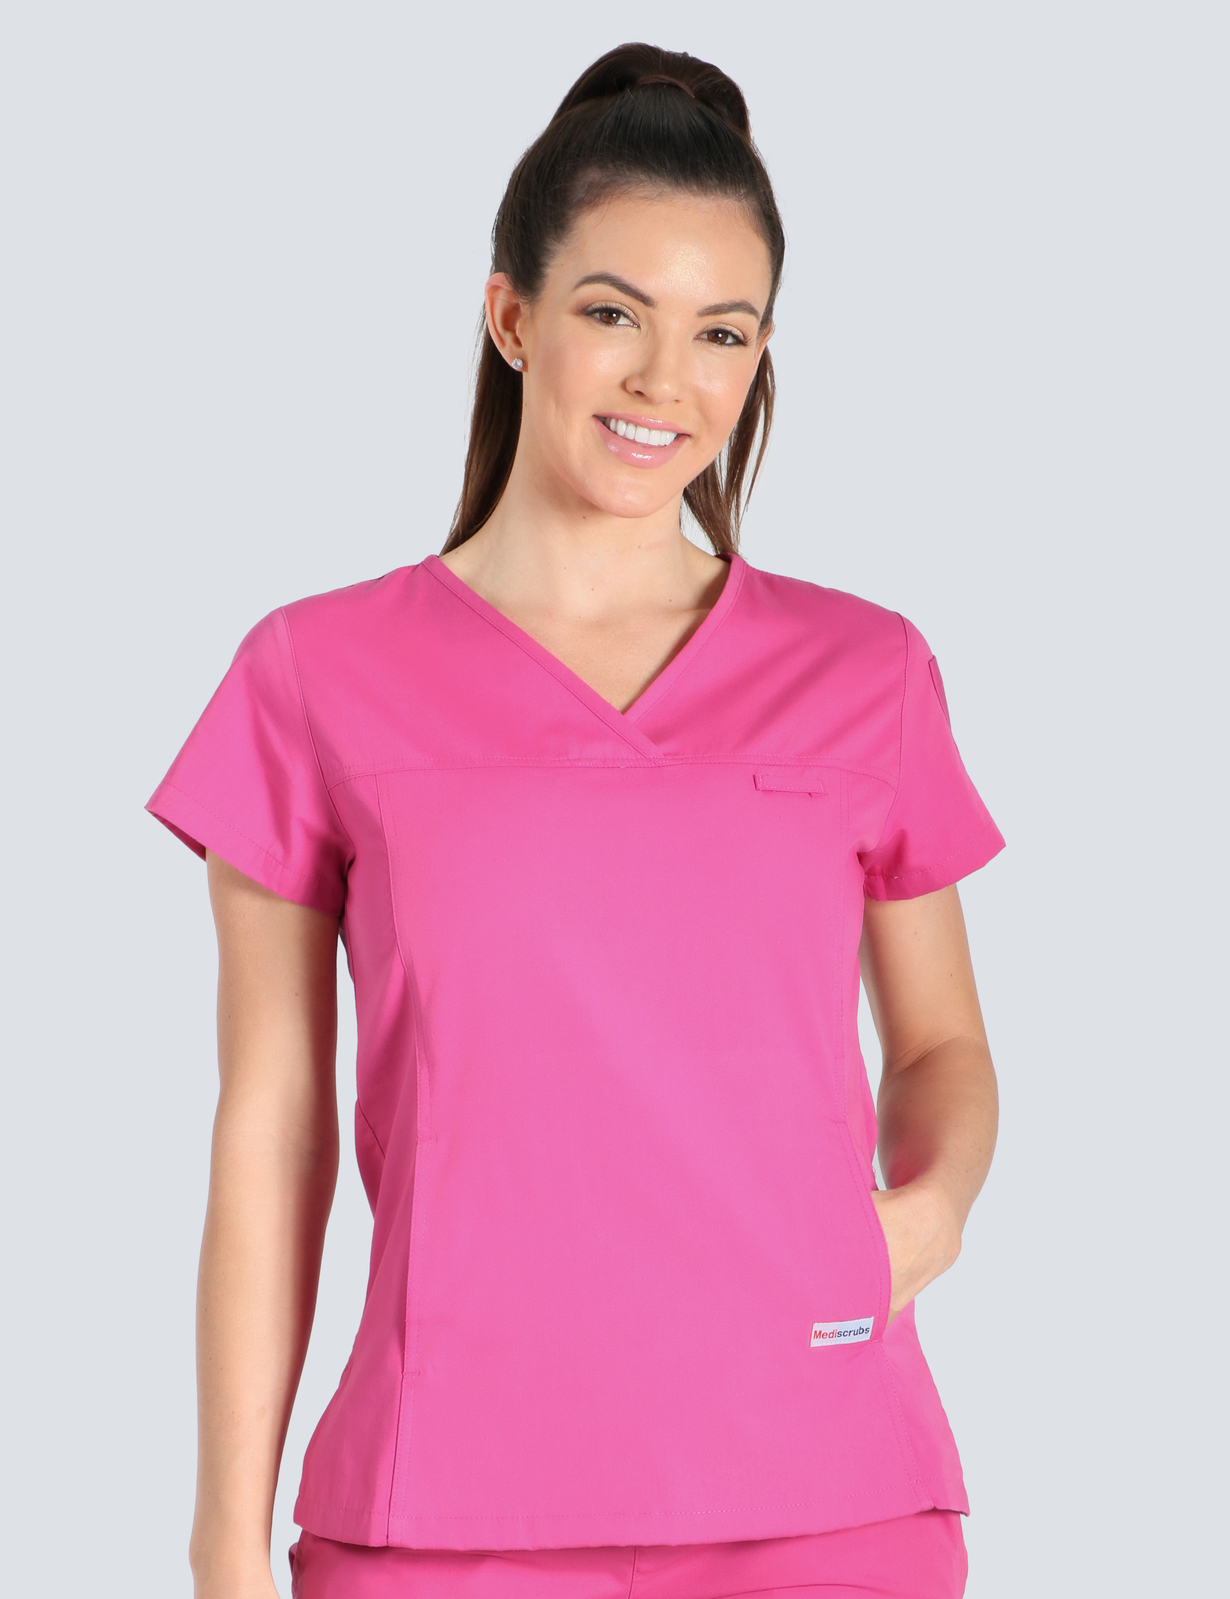 Queensland Children's Hospital Emergency Department Nurse Practitioner Uniform Top Bundle  (Women's Fit Top in Pink incl Logos)